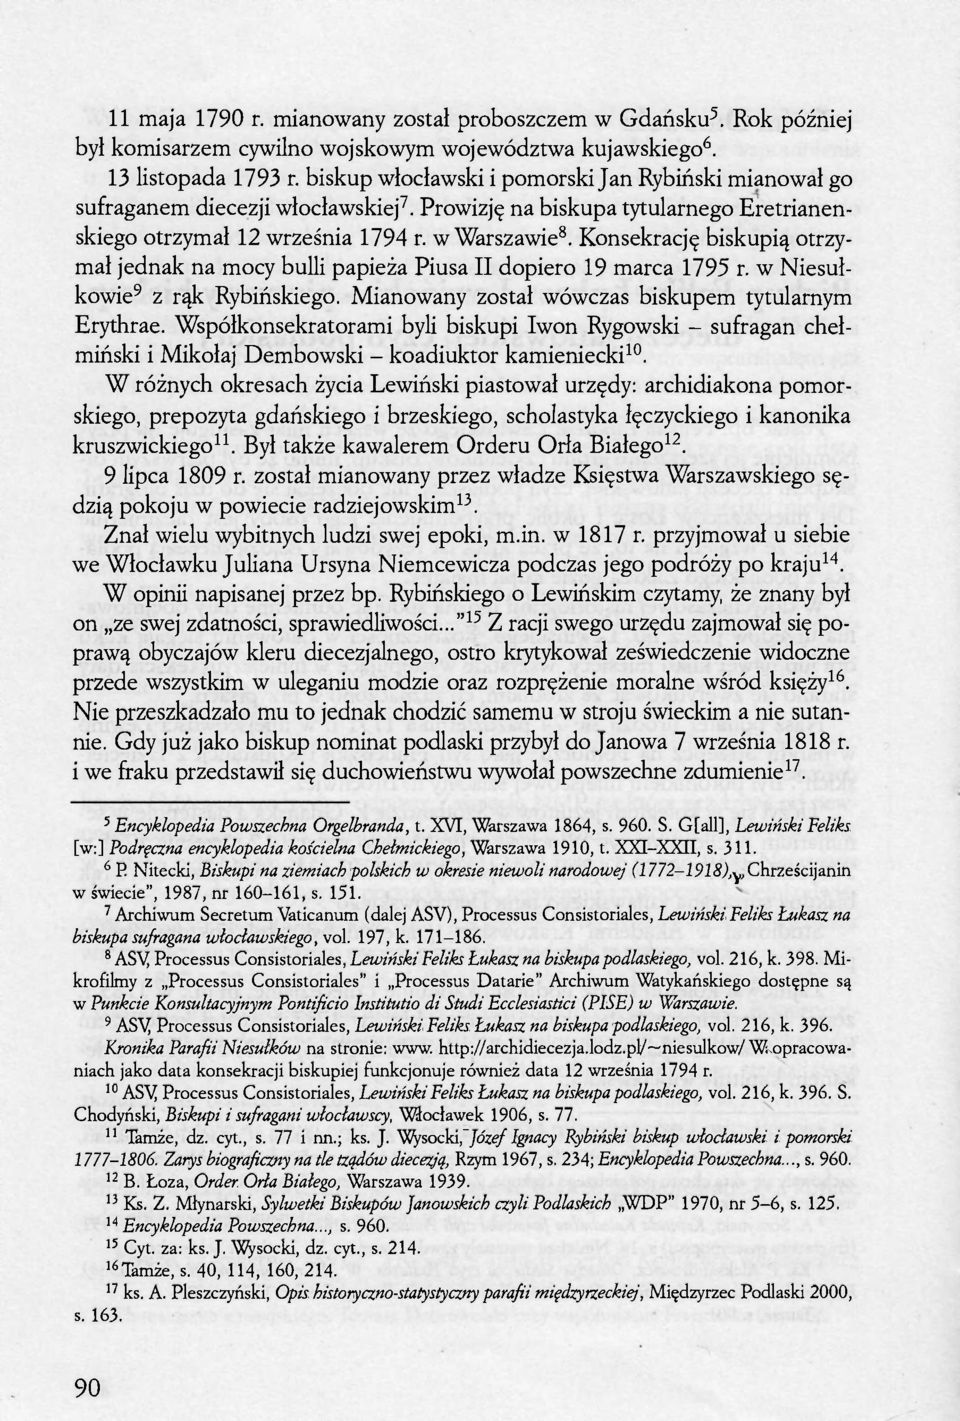 Konsekrację biskupią otrzymał jednak na mocy bulli papieża Piusa II dopiero 19 marca 1795 r. w Niesułkowie 9 z rąk Rybińskiego. Mianowany został wówczas biskupem tytularnym Erythrae.